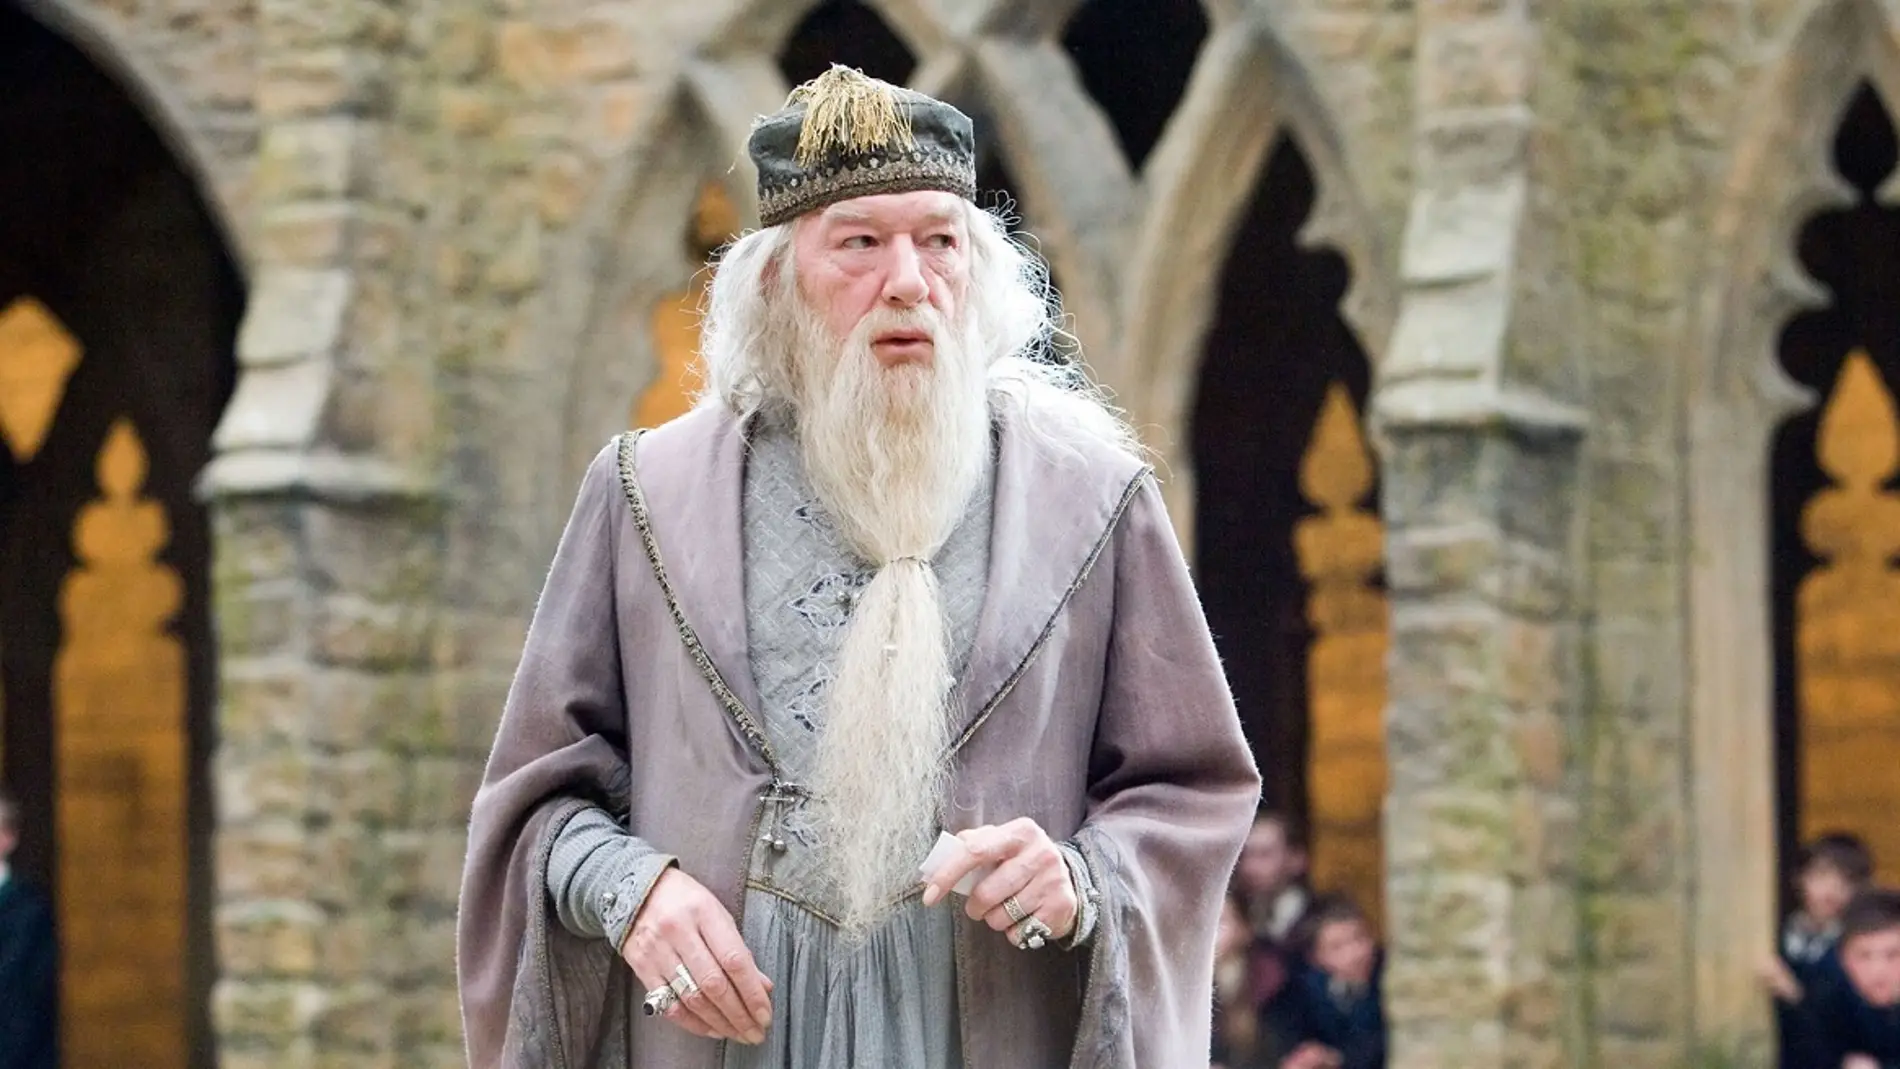 Dumbledore, ¿qué tienes que contarnos?